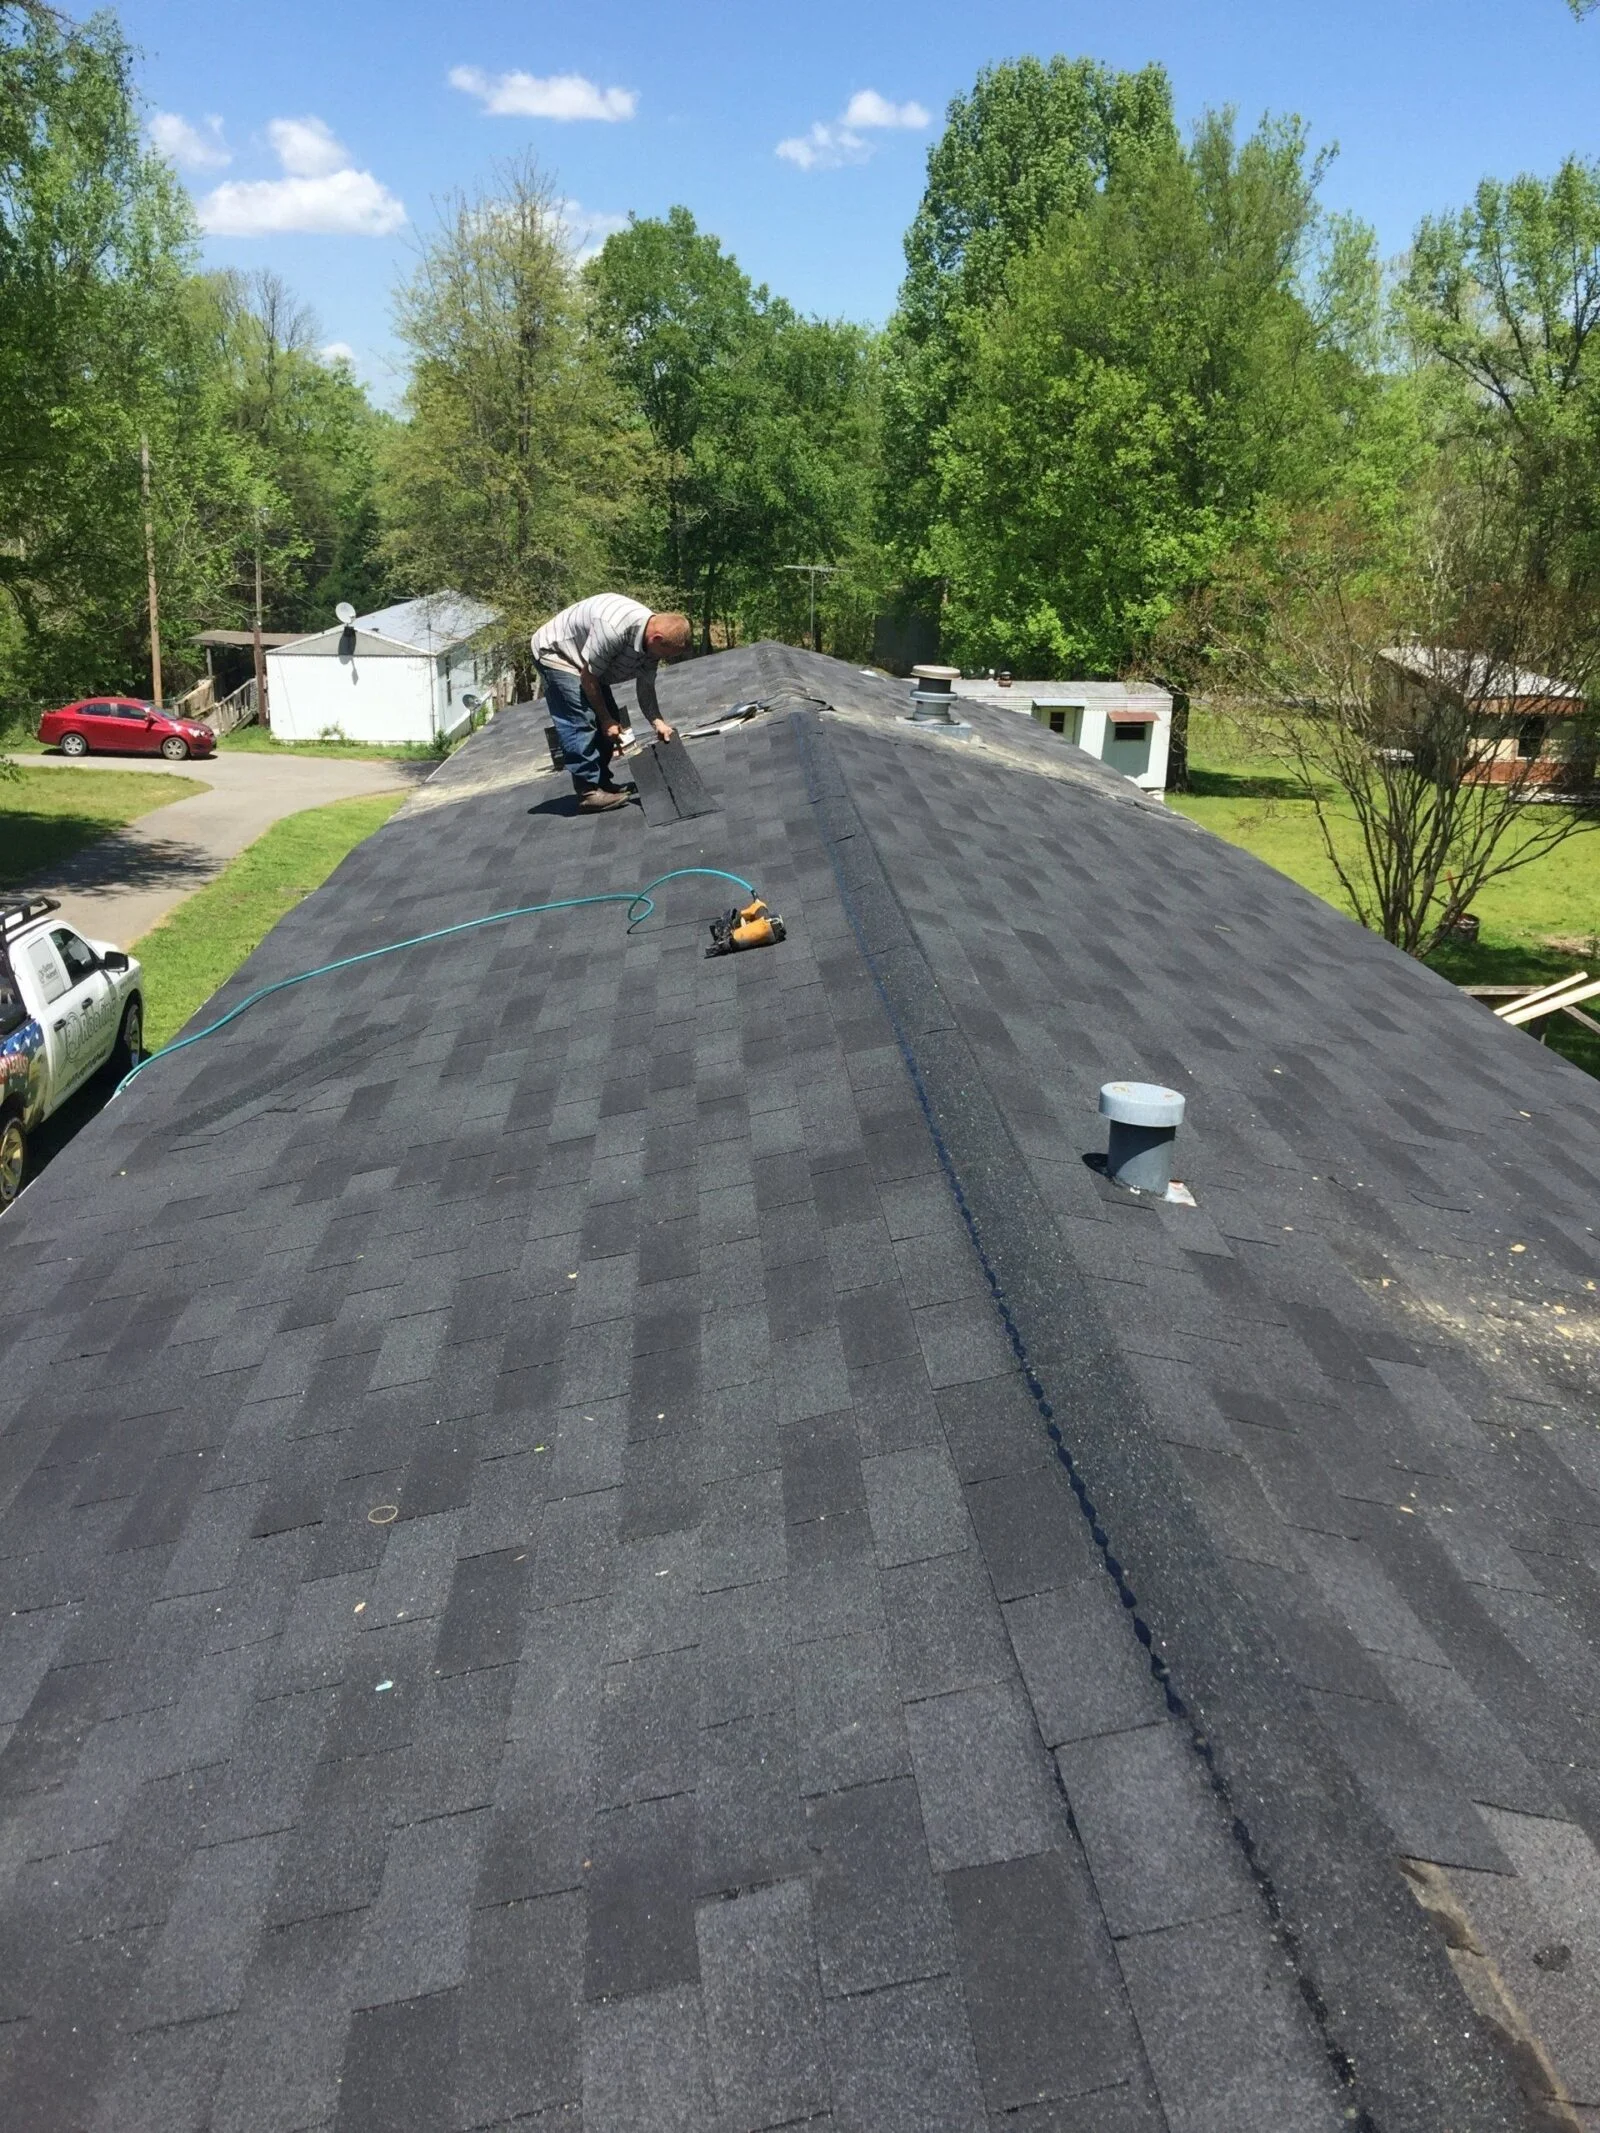 Terrace roof work in progress